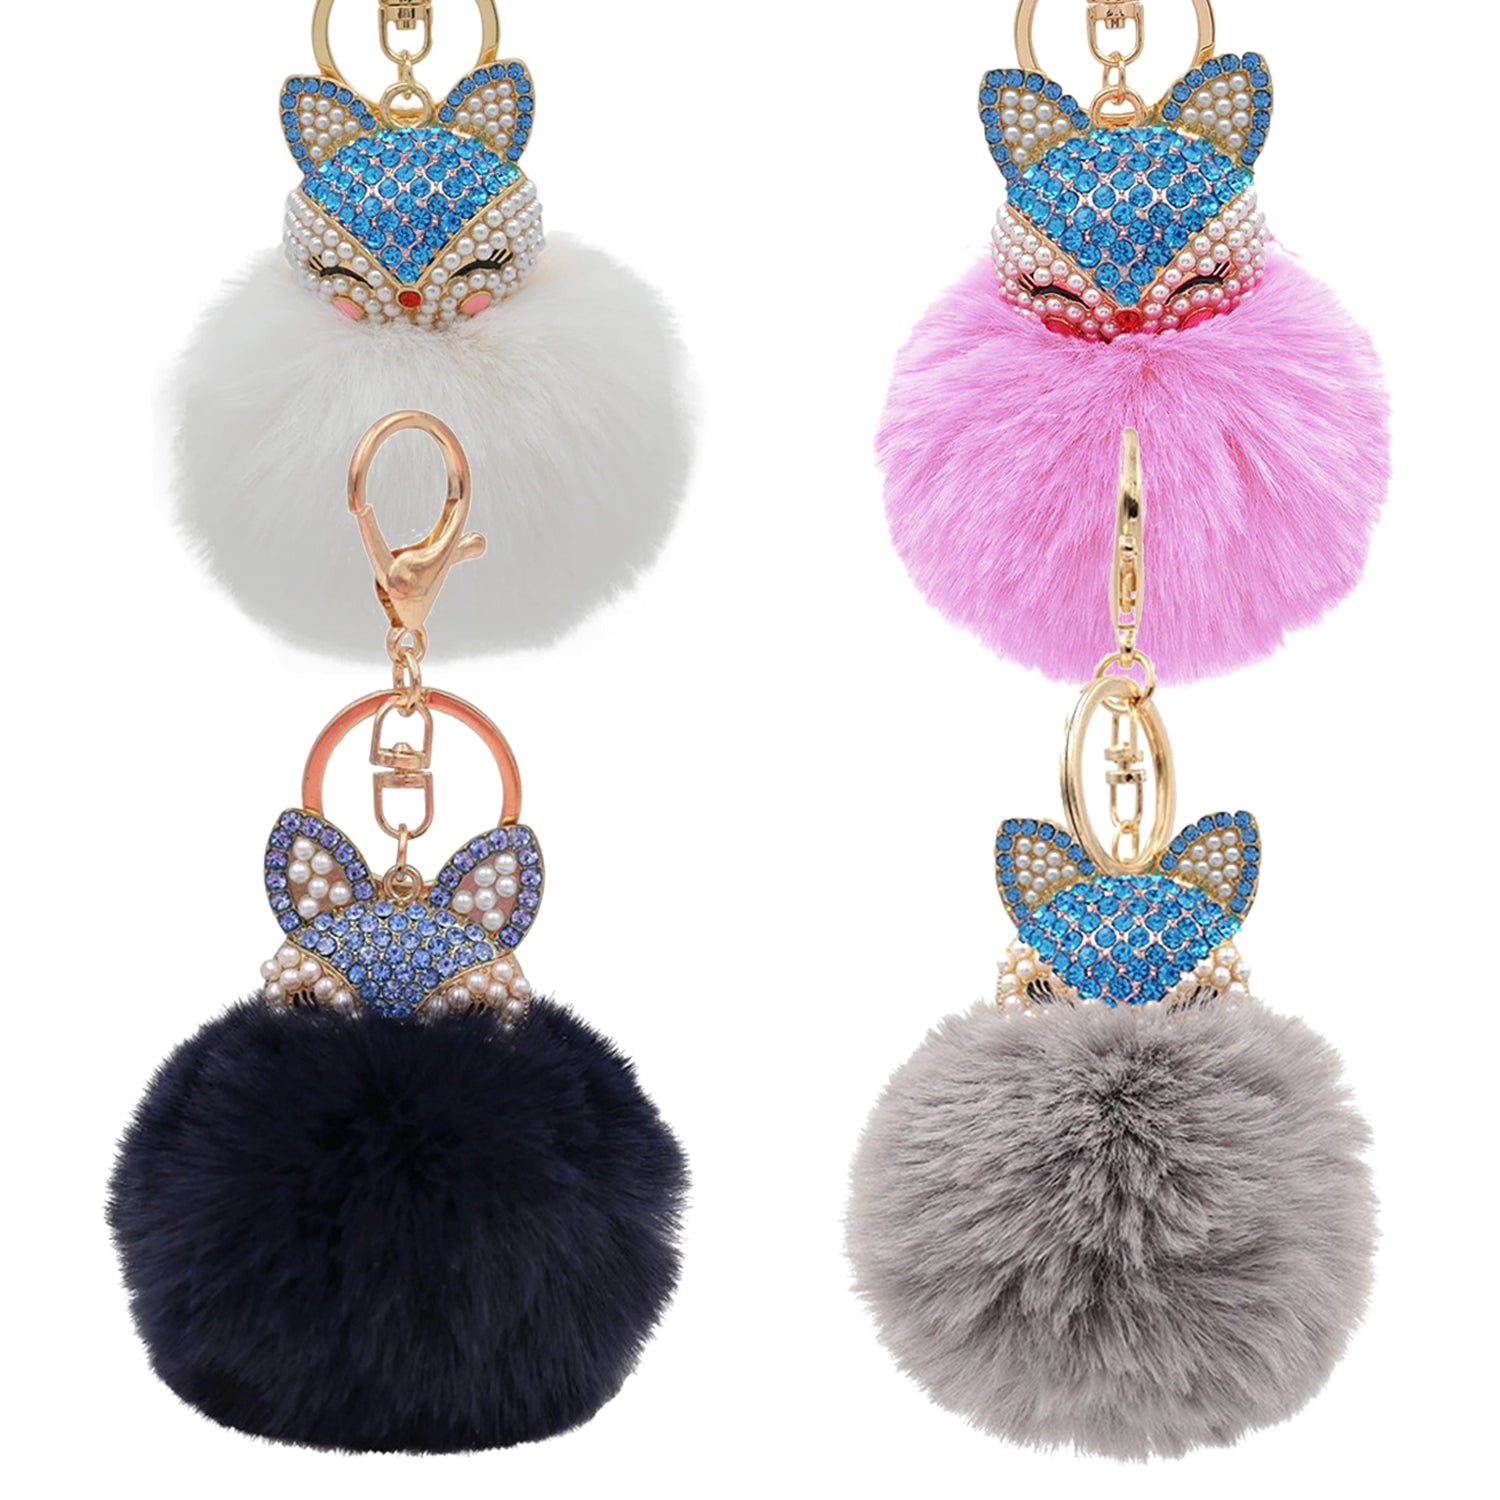 Fashion Fox Faux-Fur Pom Pom Keychain – Stylish And Cute For Keys Or B